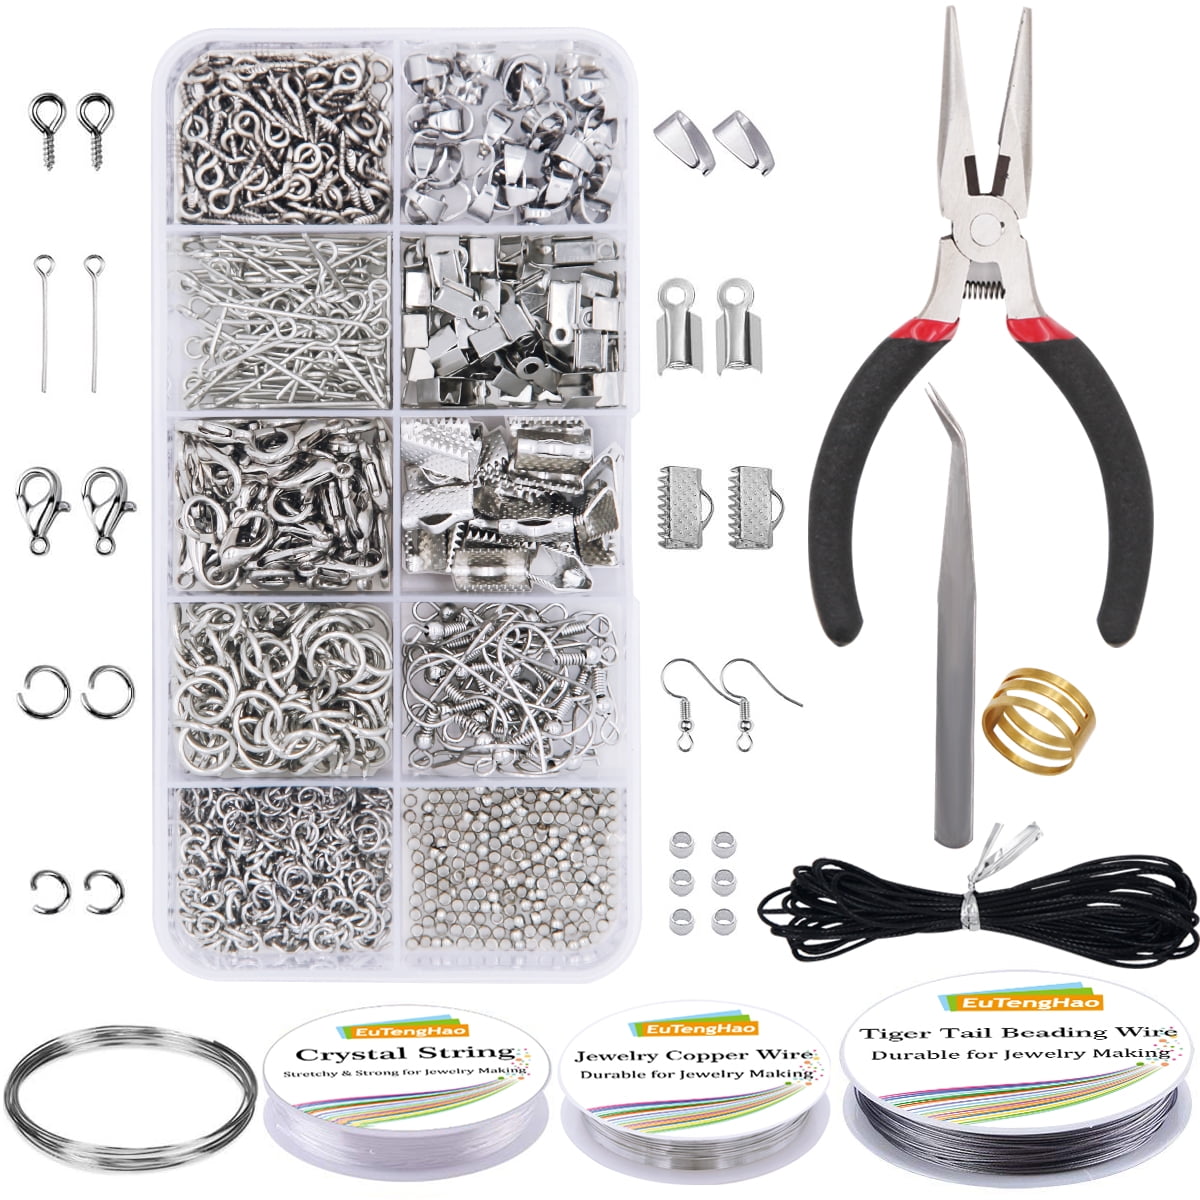 Jewelry Fix Kit